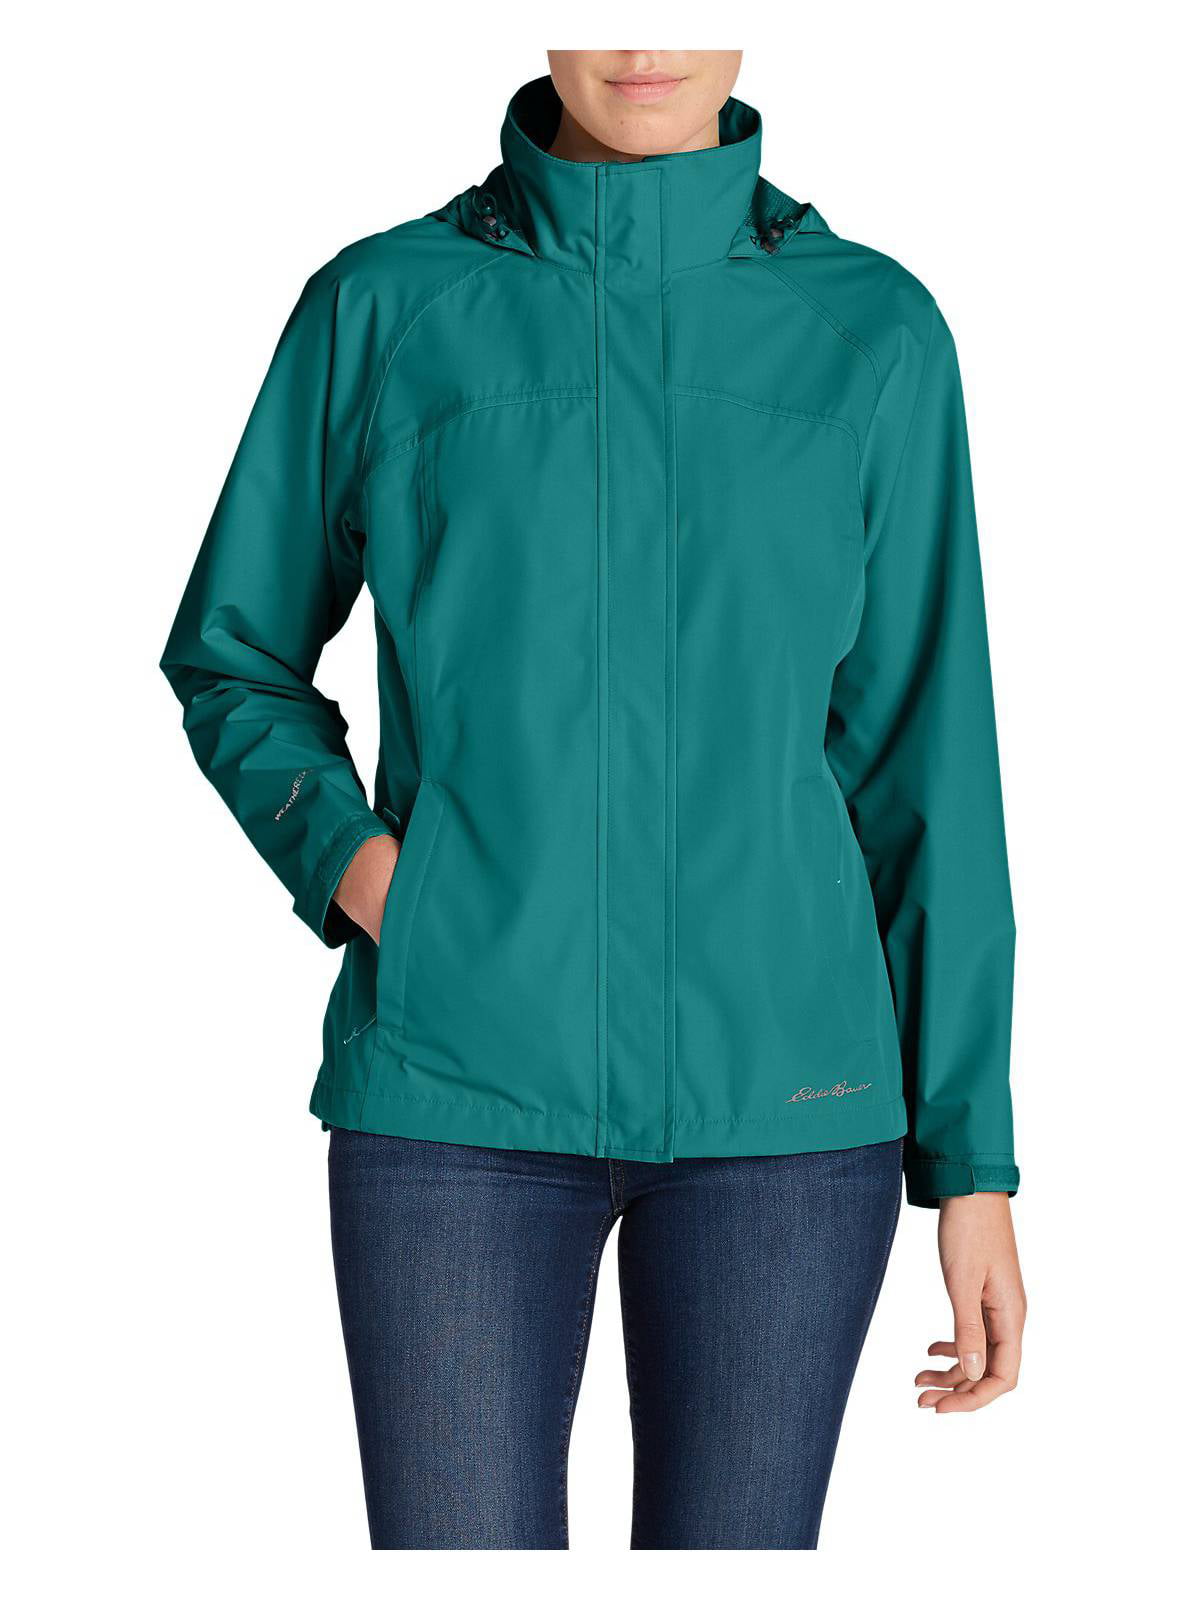 Eddie Bauer Women/'s Rainfoil Packable Jacket